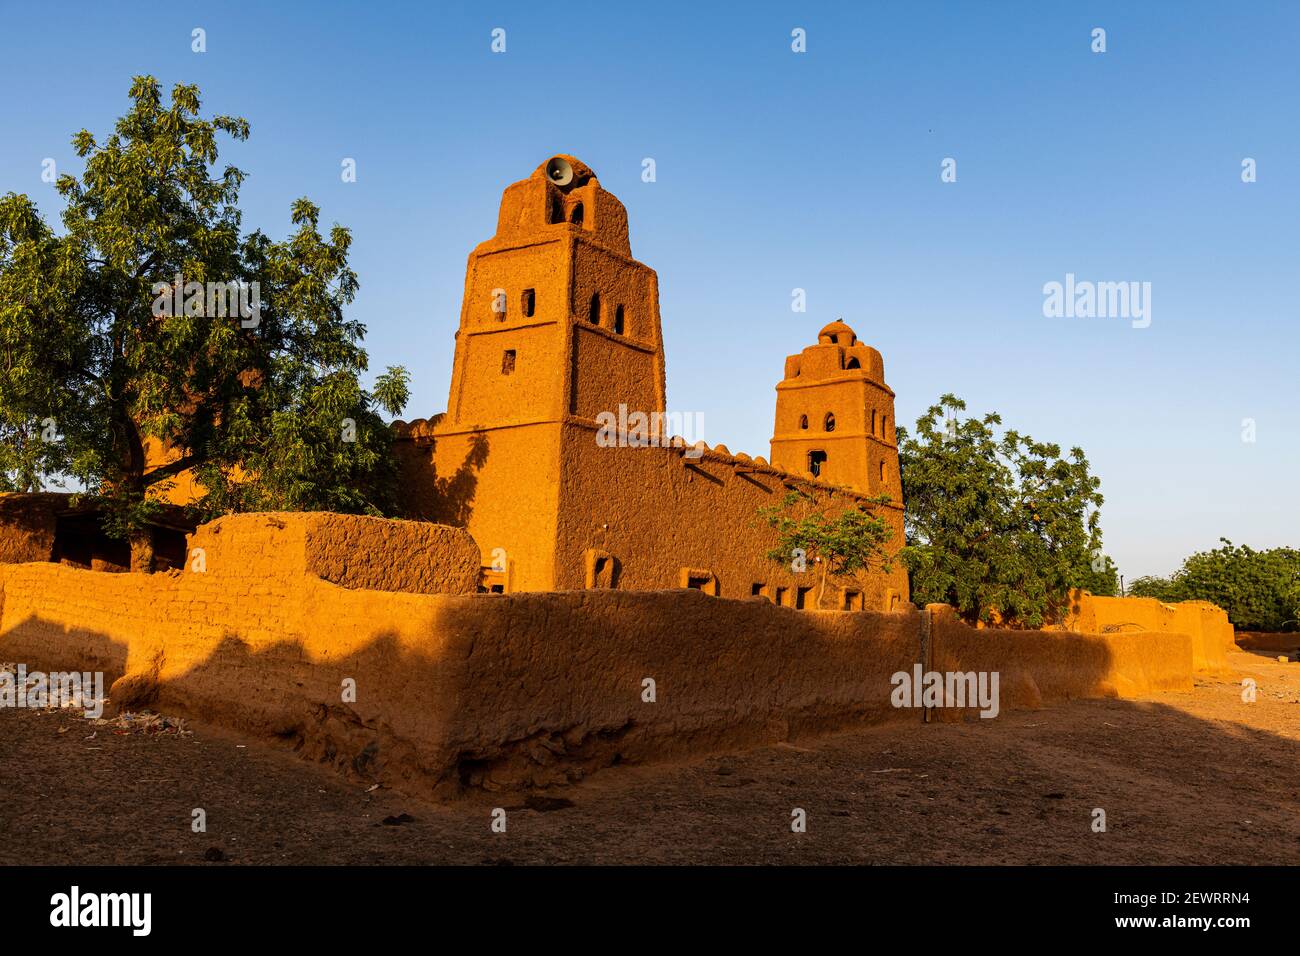 Moschea di stile architettonico sudano-Saheliano a Yamma, Sahel, Niger, Africa Foto Stock